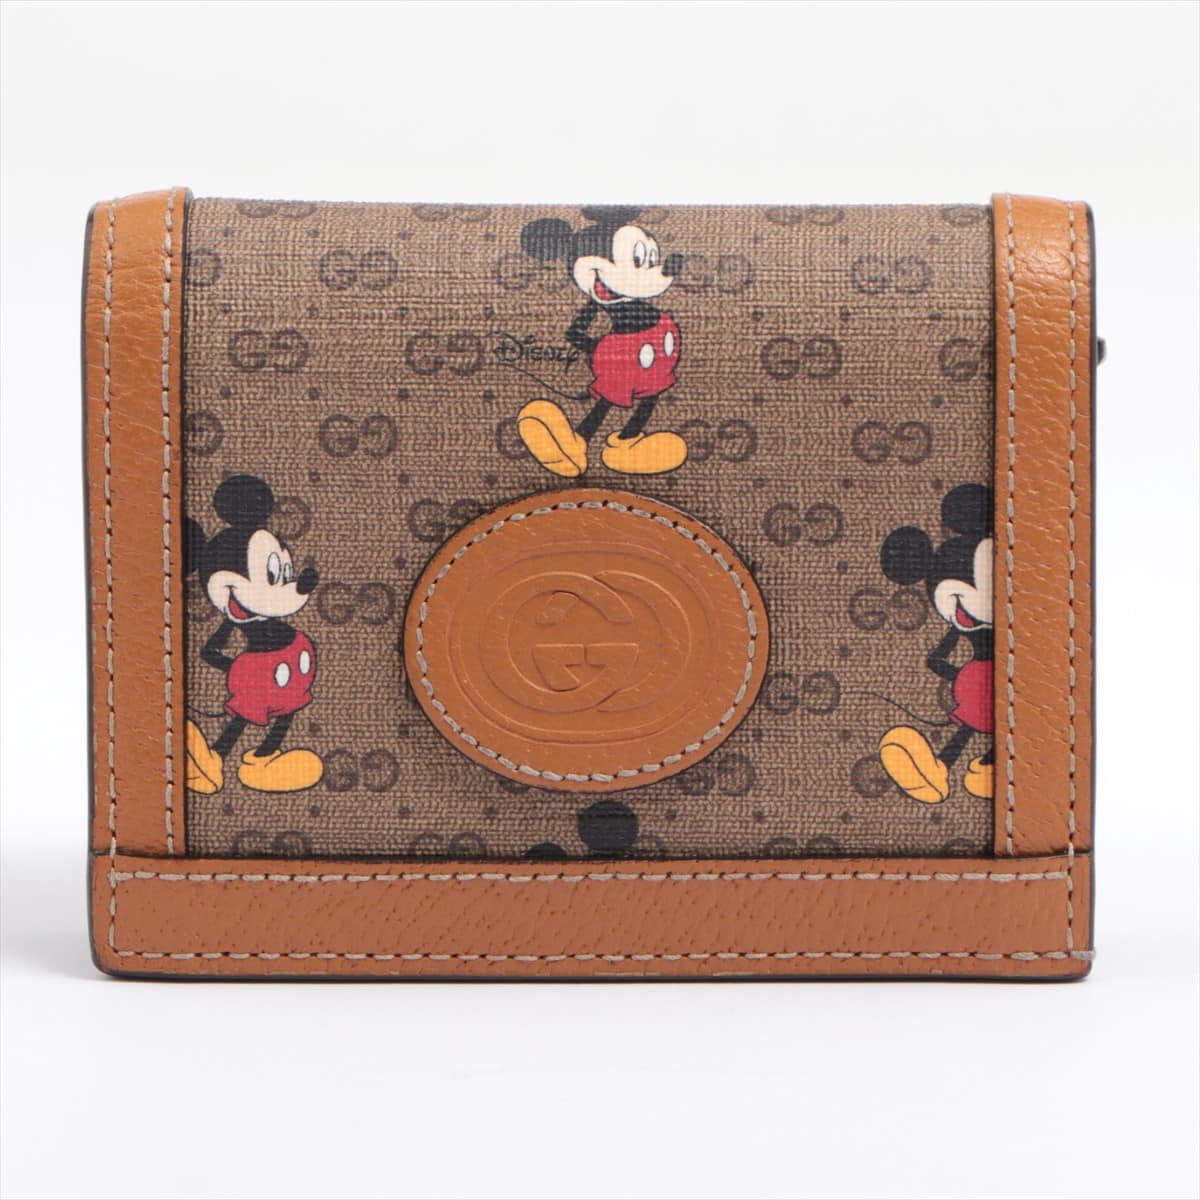 Gucci x Disney Mini GG Supreme 602534 PVC & leather Wallet Beige